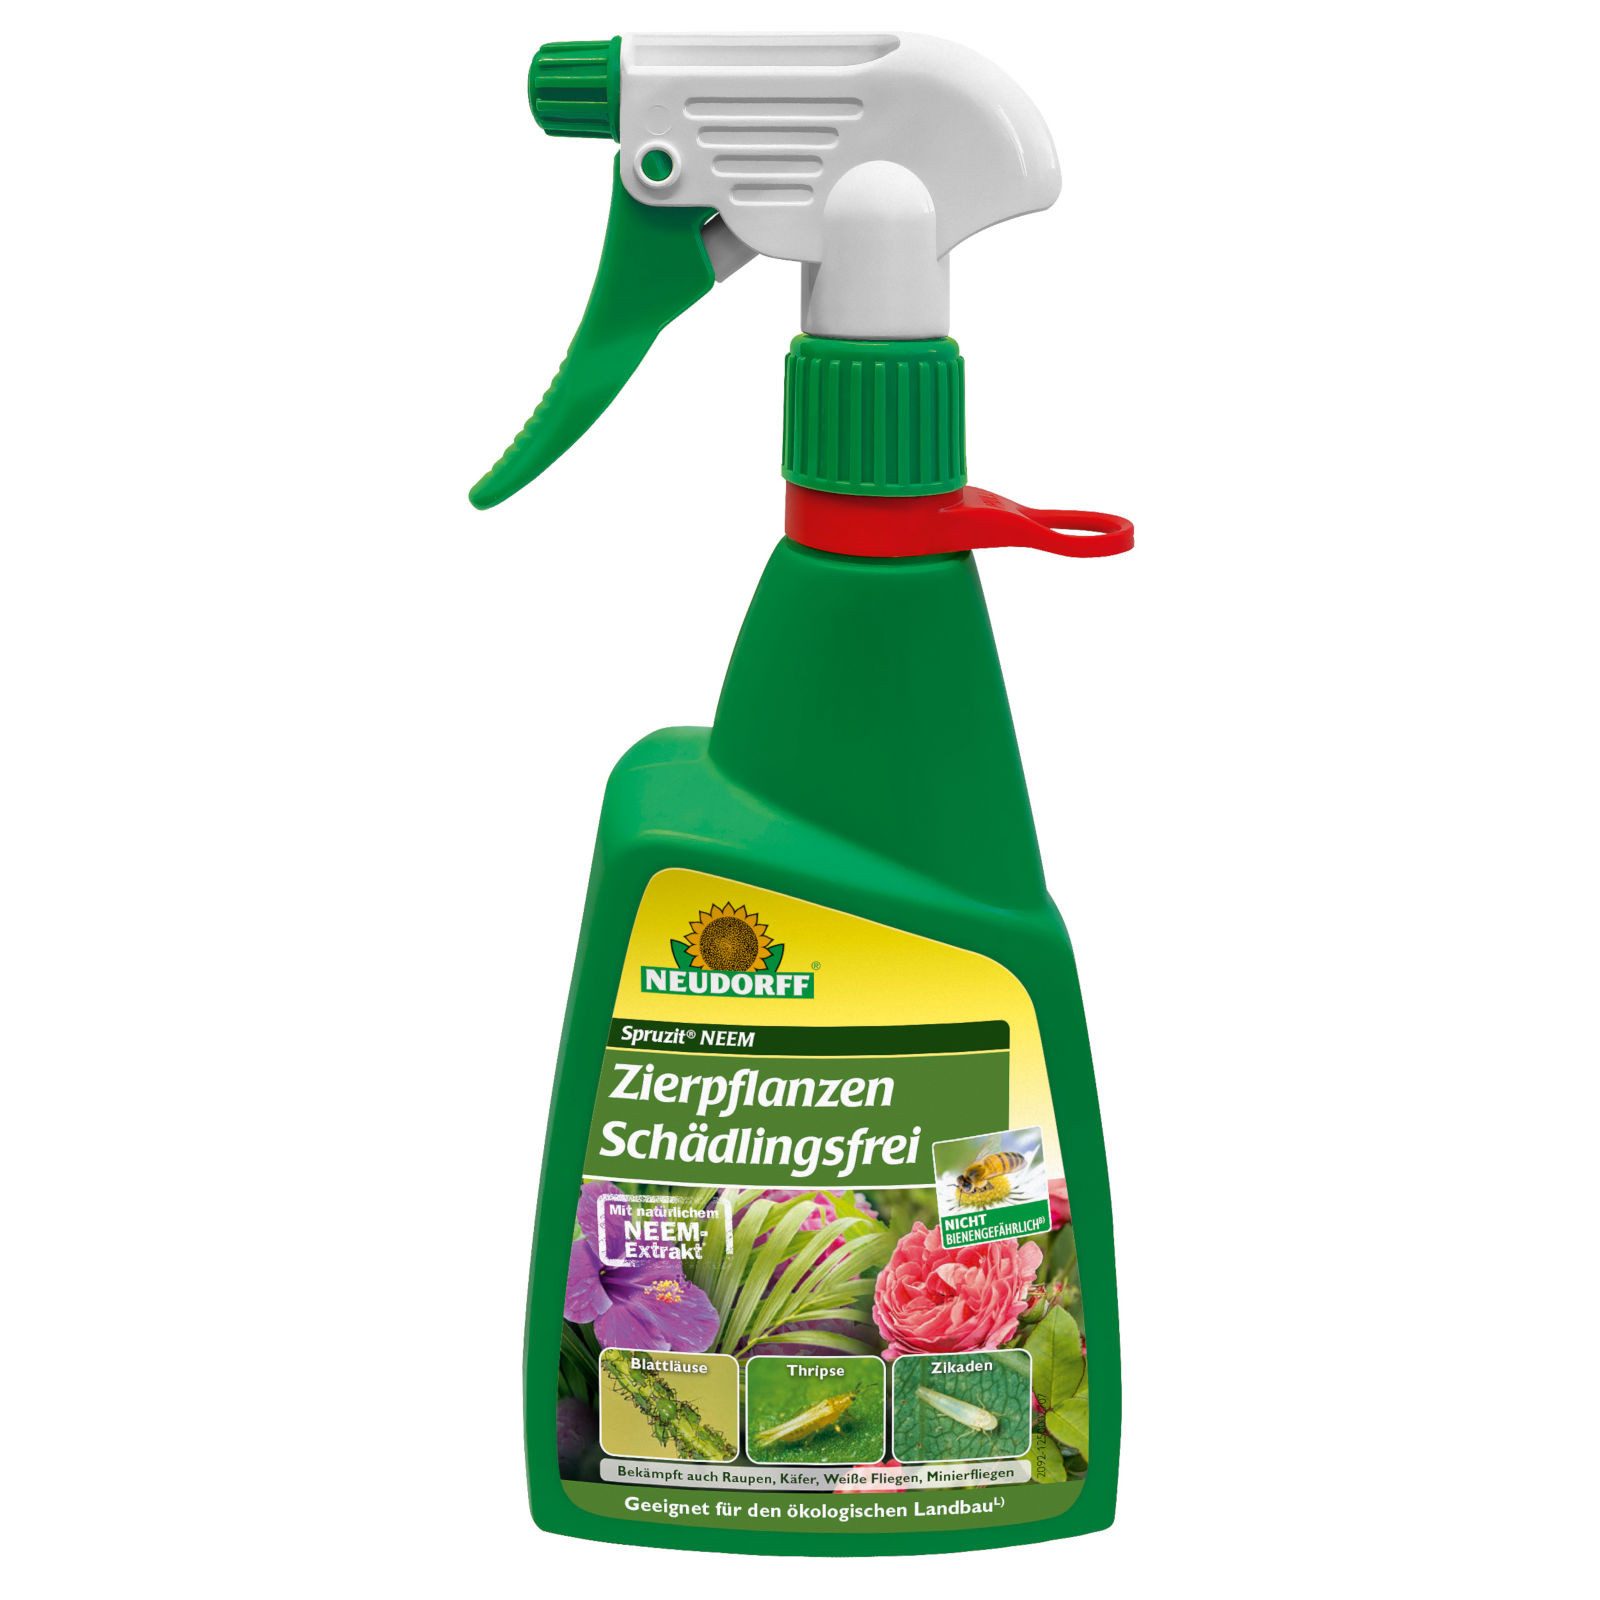 Neudorff Insektenvernichtungsmittel Spruzit NEEM Zierpflanzen Schädlingsfrei - 450 ml